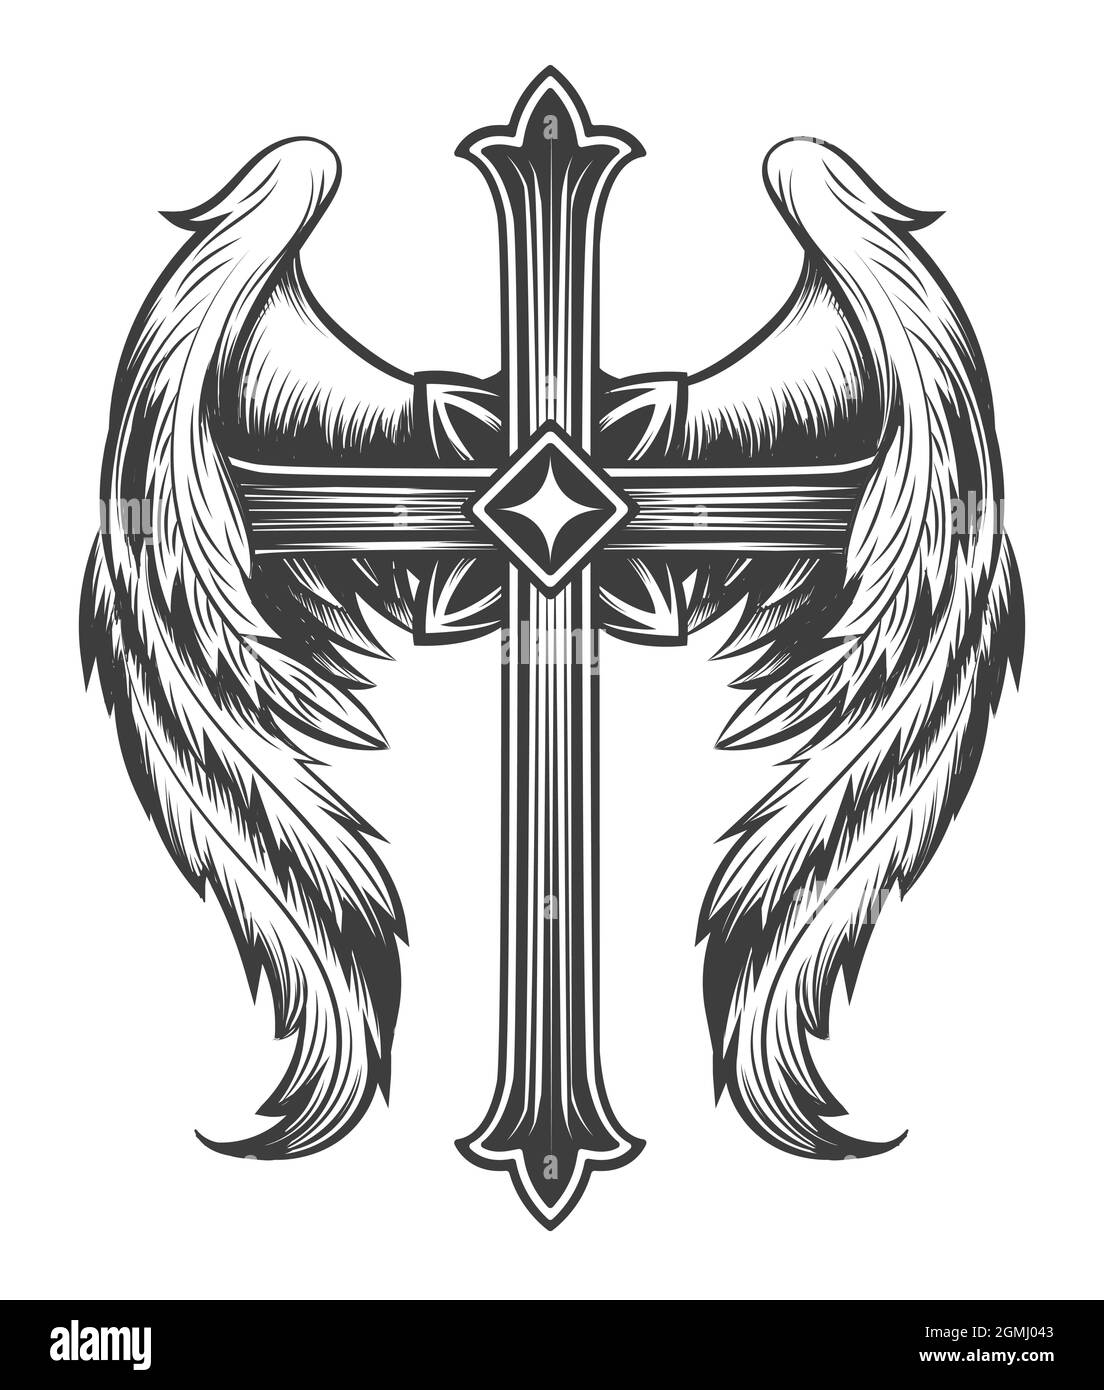 Croix à ailes de tatouage dessinée dans le style Monochrome gravure. Illustration vectorielle. Illustration de Vecteur